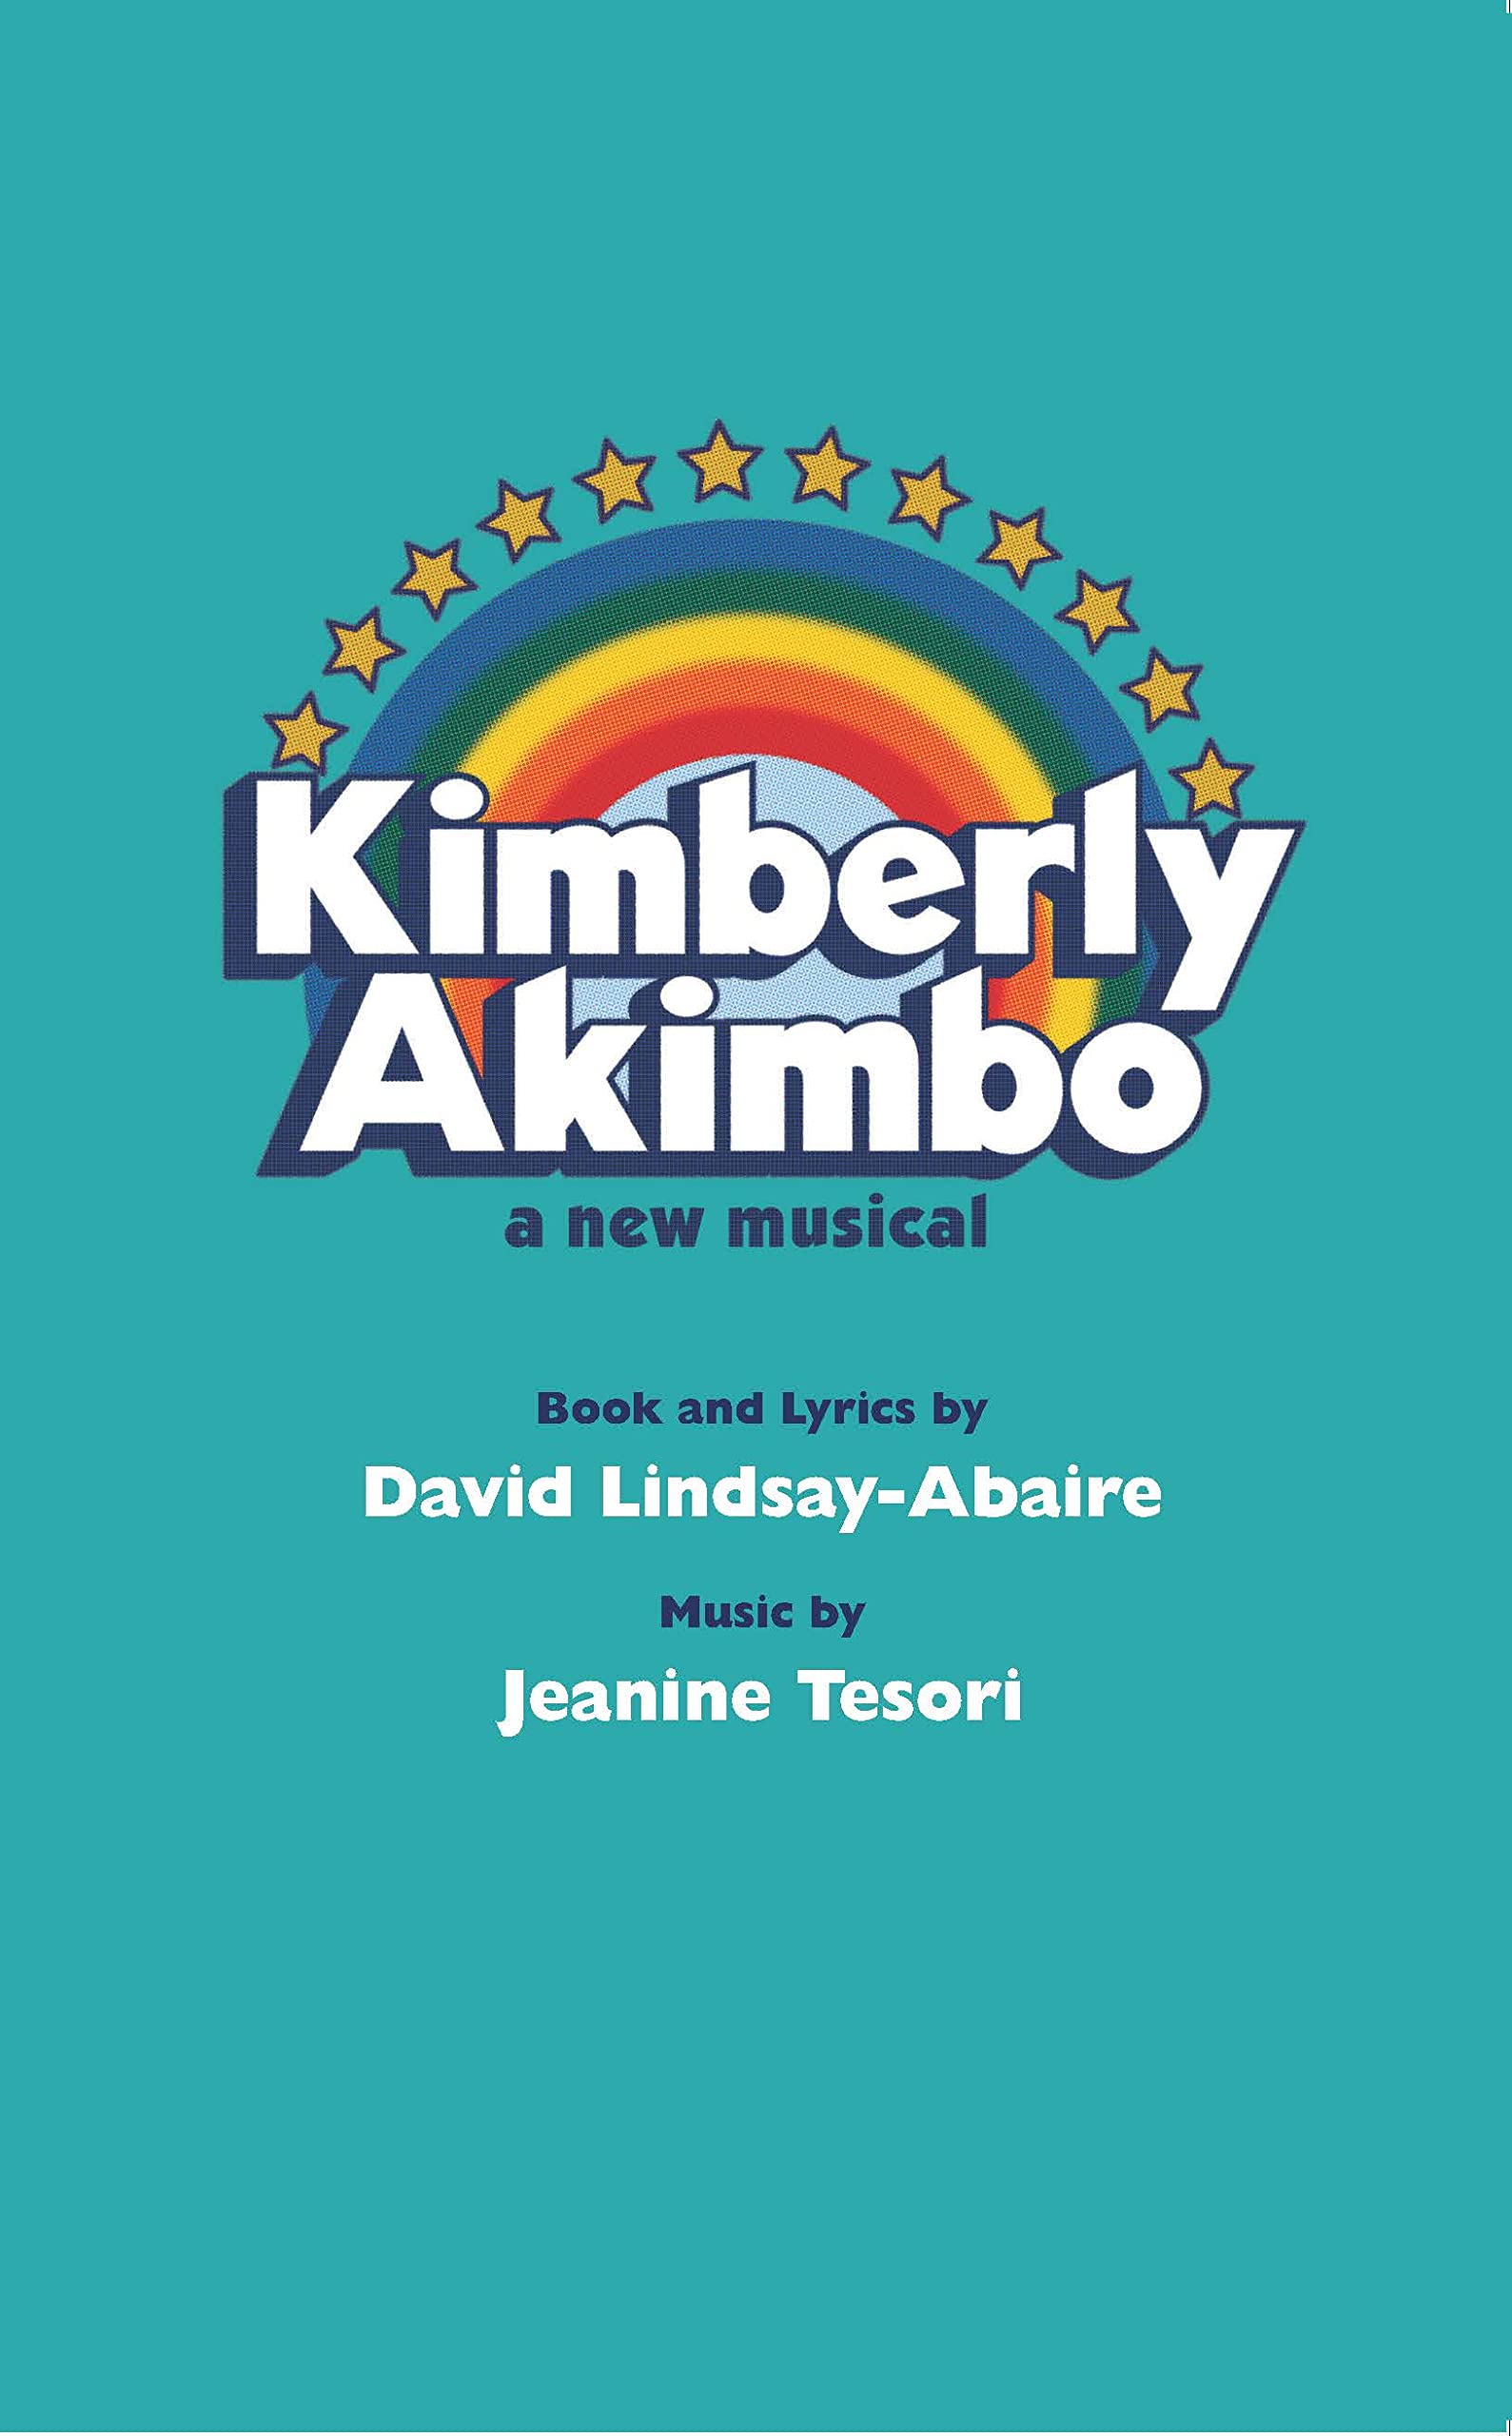 Kimberly Akimbo by David Lindsay-Abaire